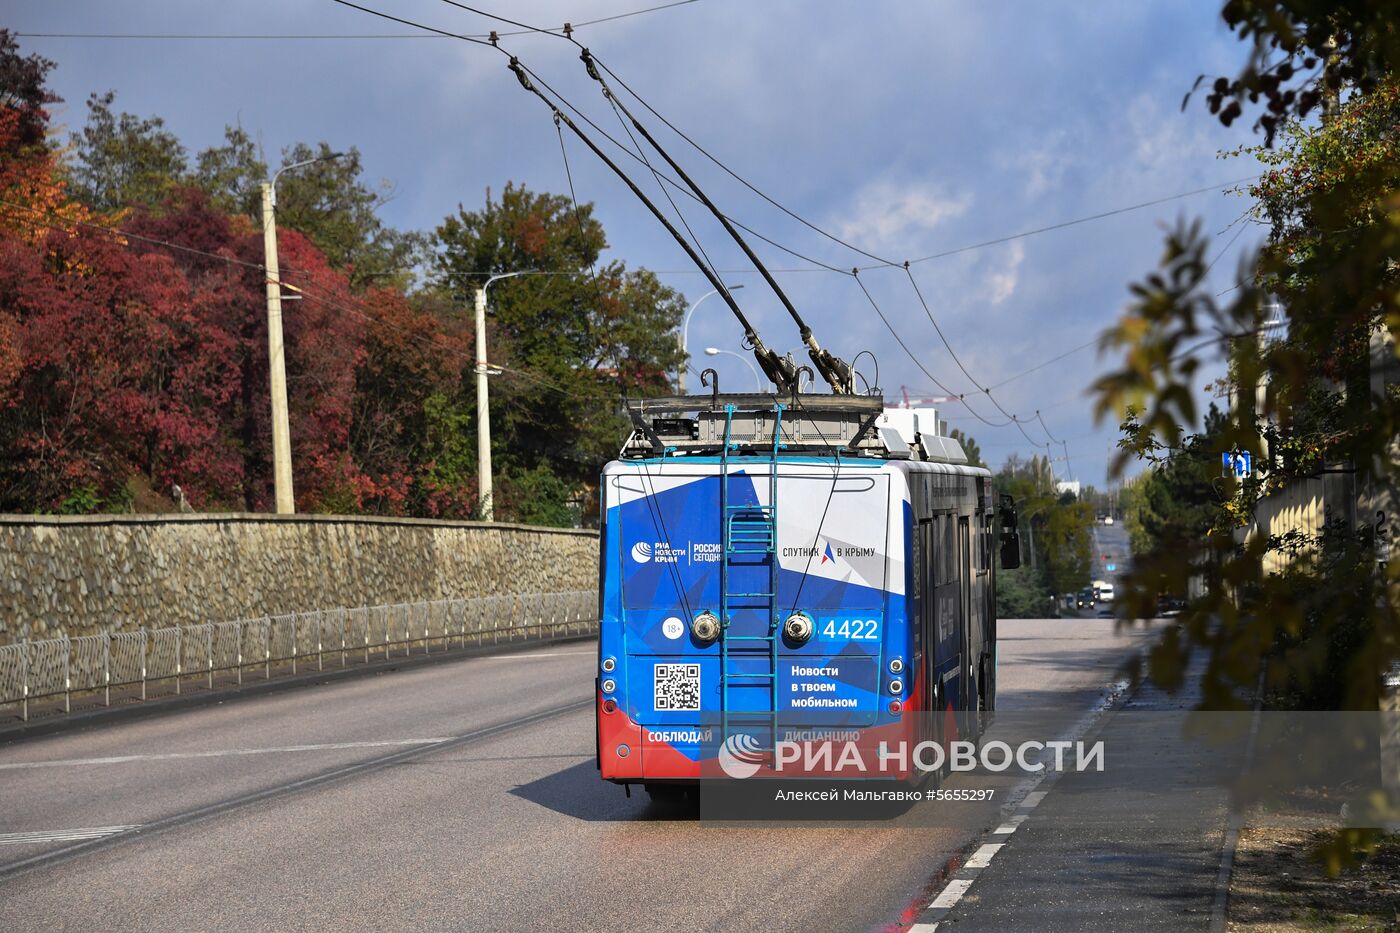 Троллейбус МИА «Россия сегодня» вышел на самый длинный маршрут в мире 